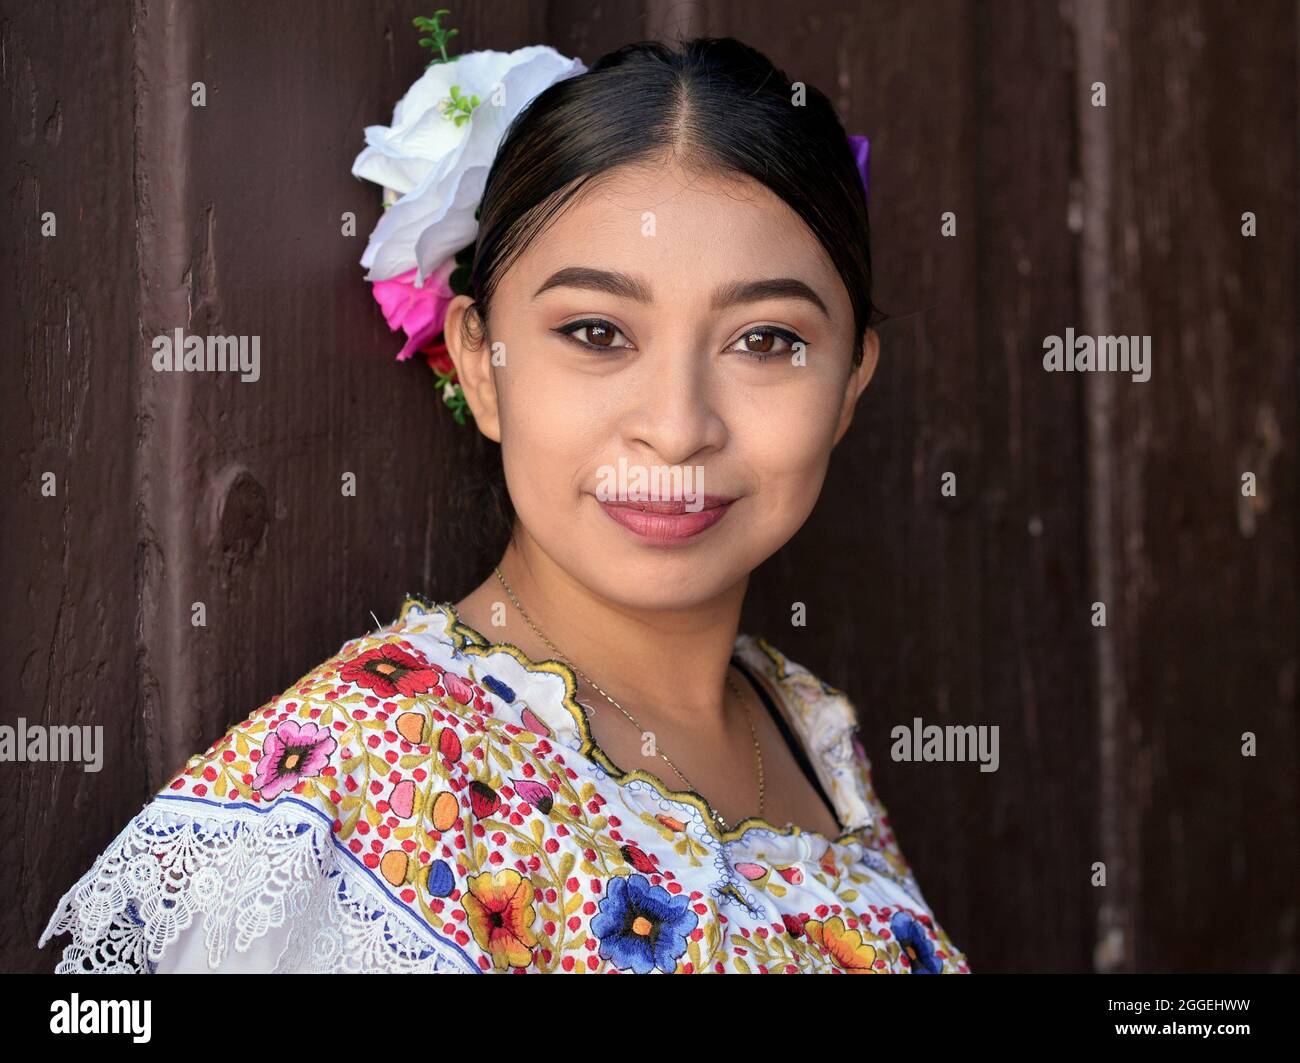 Jeune femme mexicaine belle avec maquillage porte traditionnelle Yucatecan Yucatecan robe folklorique avec des fleurs dans ses cheveux et pose pour la caméra. Banque D'Images